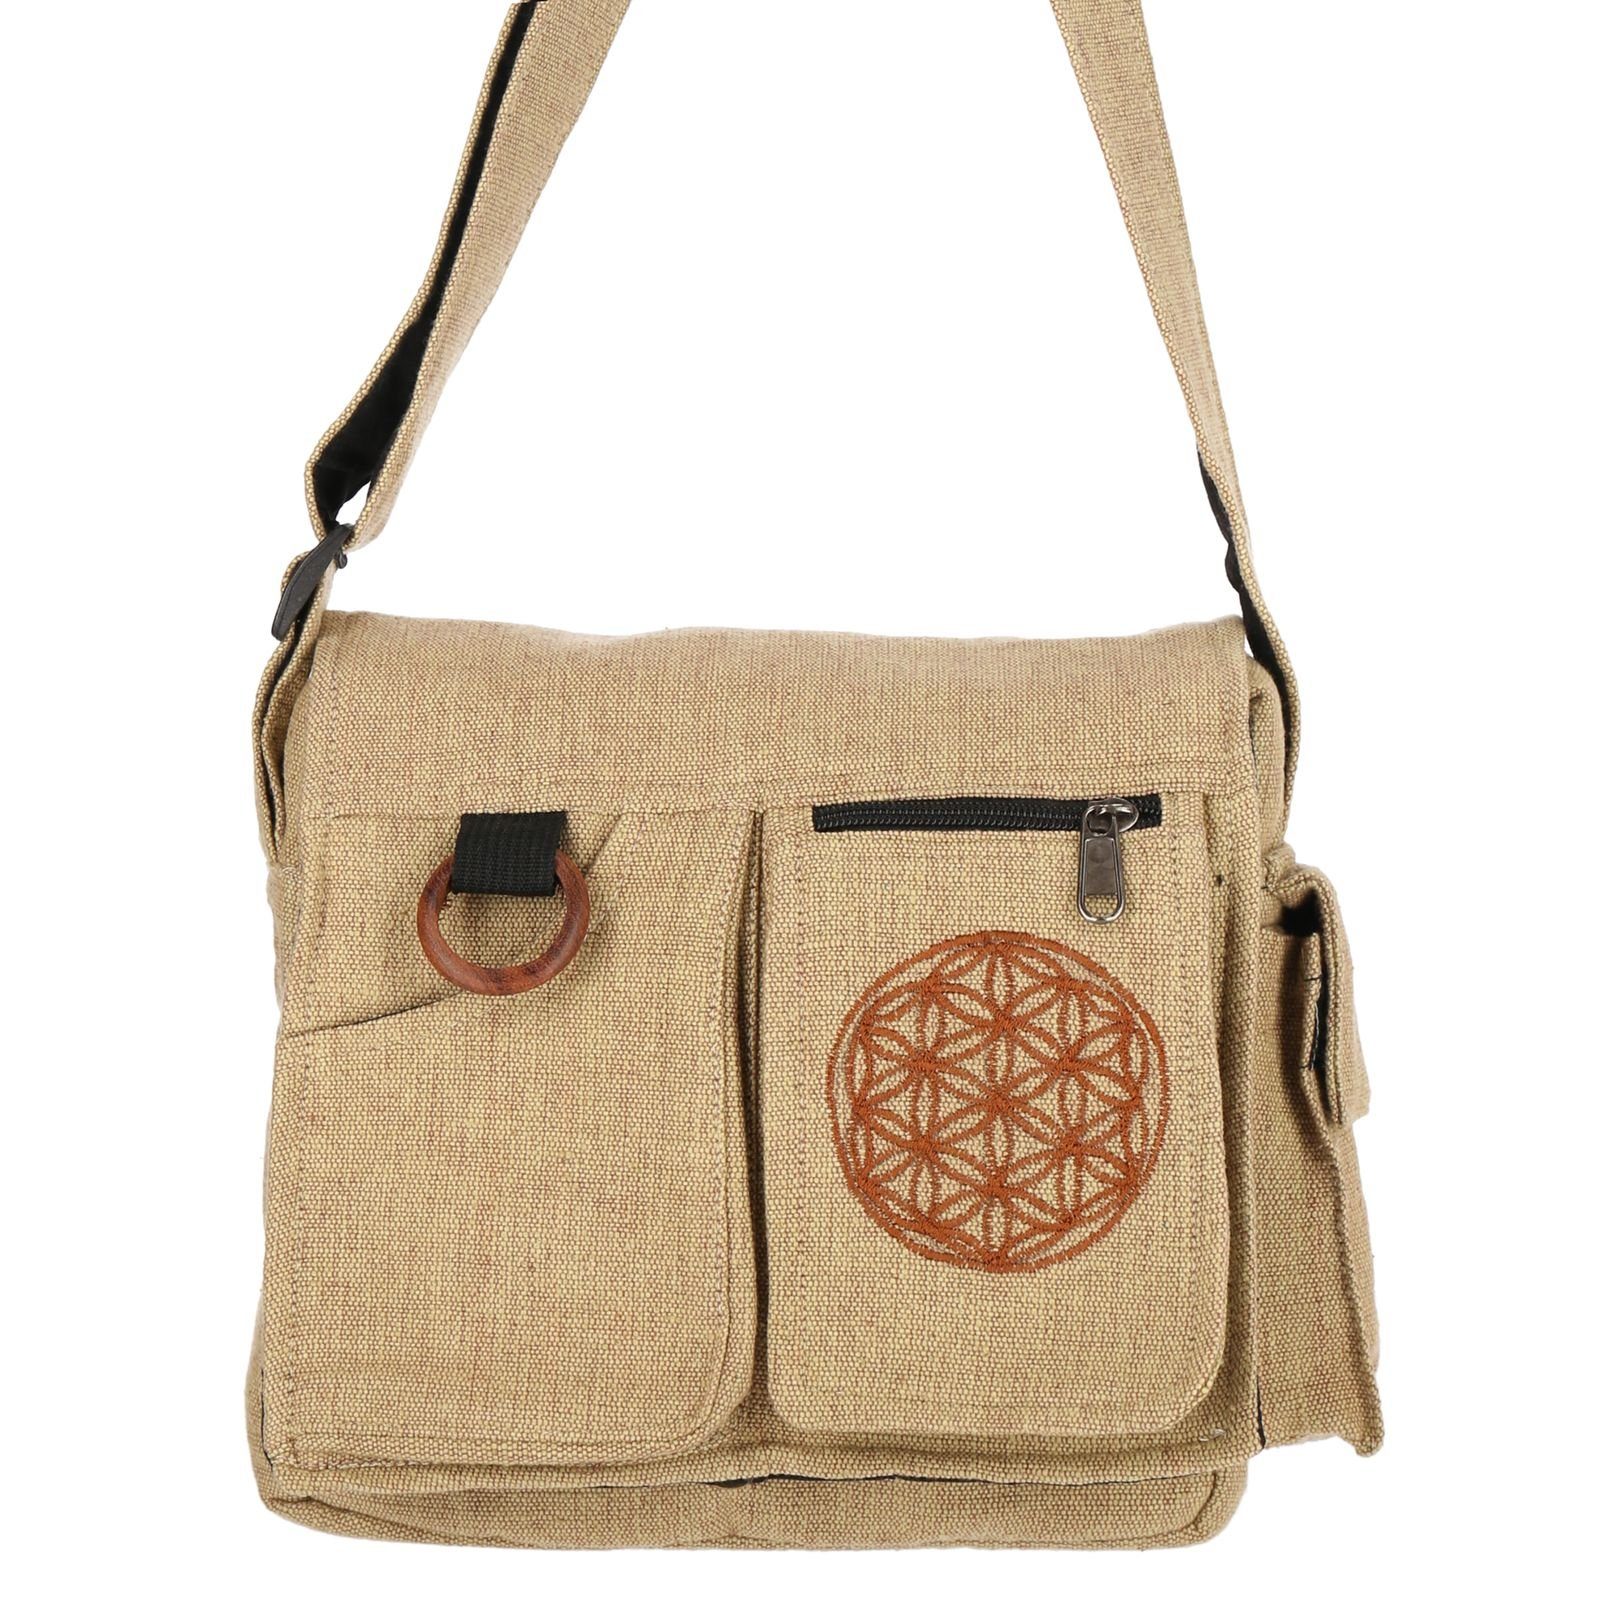 KUNST UND MAGIE Hippie Lebensblume Naturfarben Schultertasche Handtasche +Schulterriemen Tasche Umhängetasche